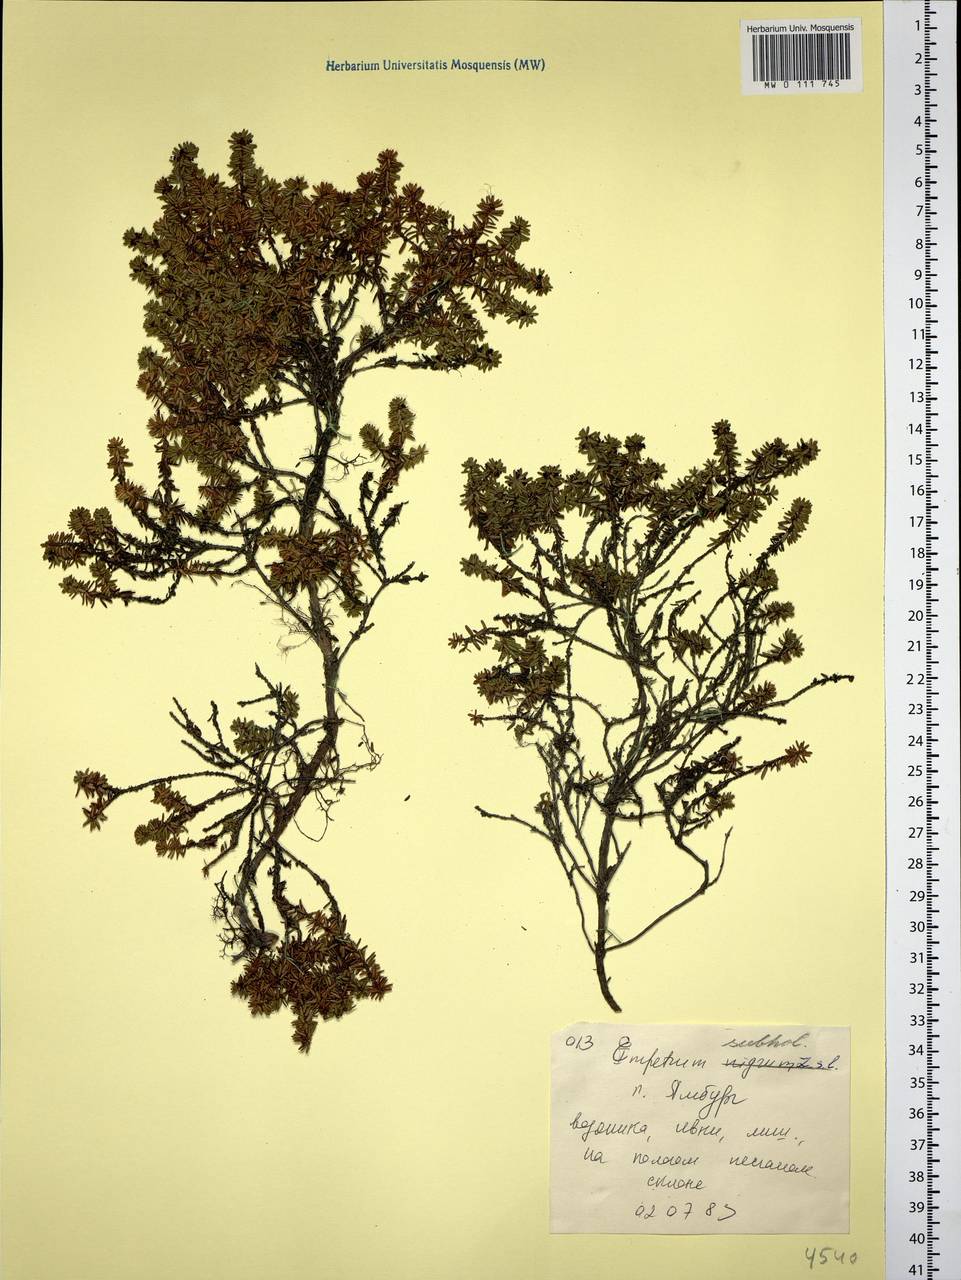 Empetrum nigrum subsp. subholarcticum (V. N. Vassil.) Kuvaev, Siberia, Western Siberia (S1) (Russia)